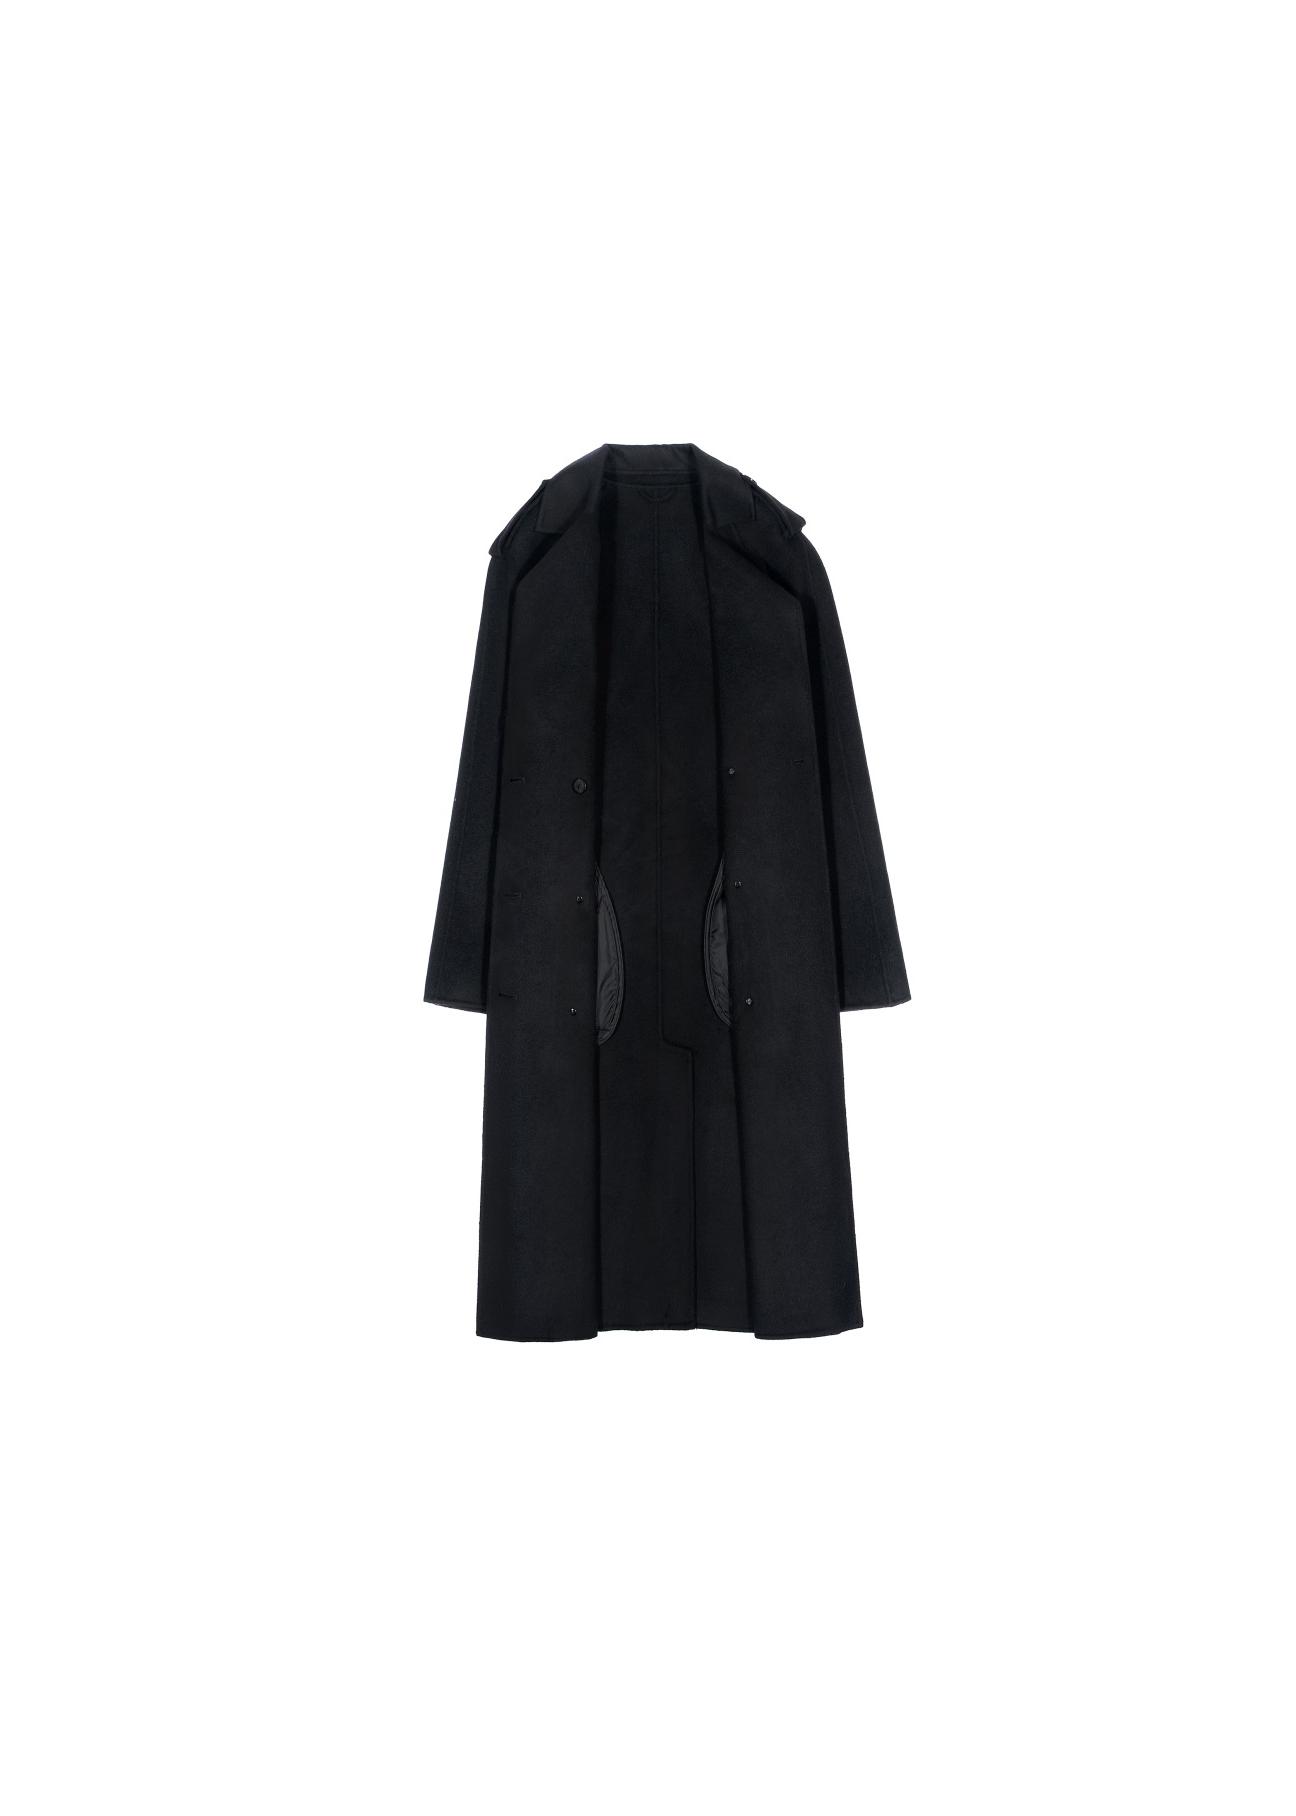 Klasyczny czarny płaszcz damski PLADT-0035-99(Z20)